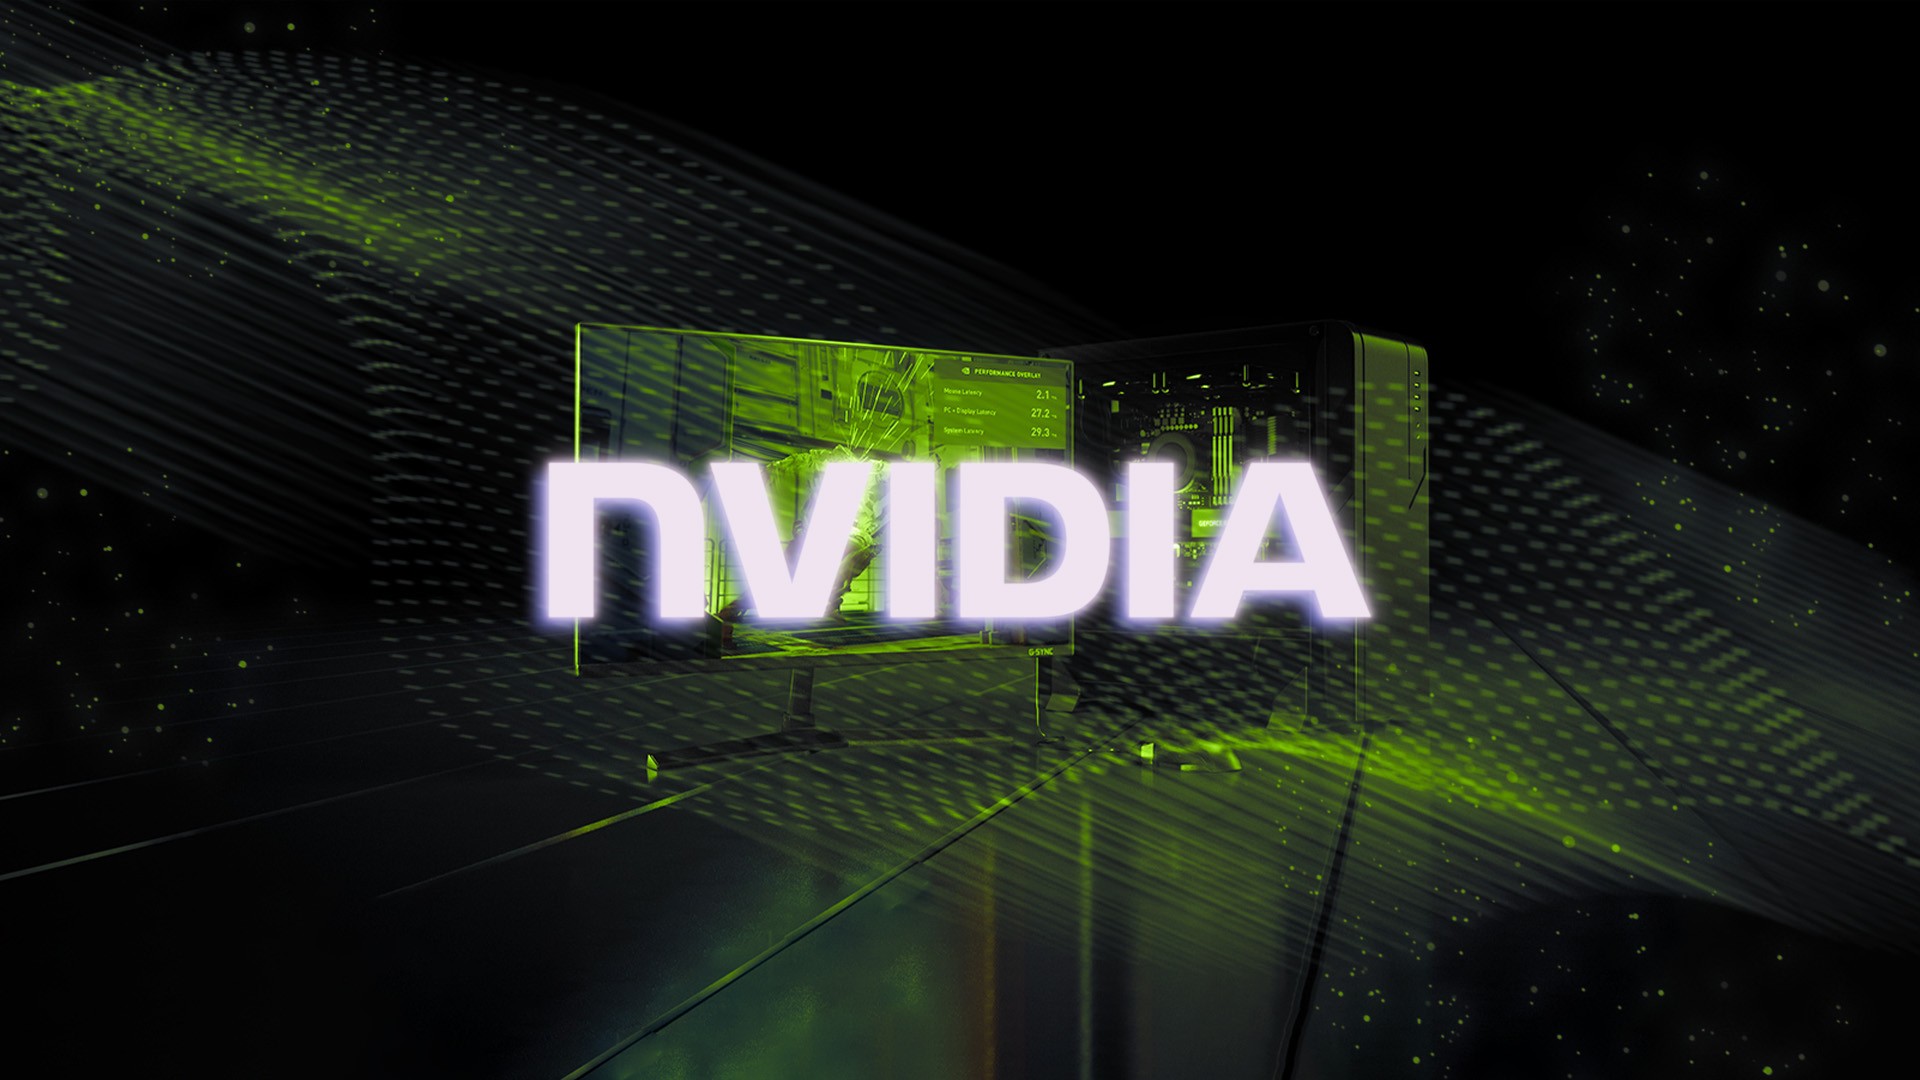 Como atualizar o driver de placas de vídeo Nvidia para Ray Tracing